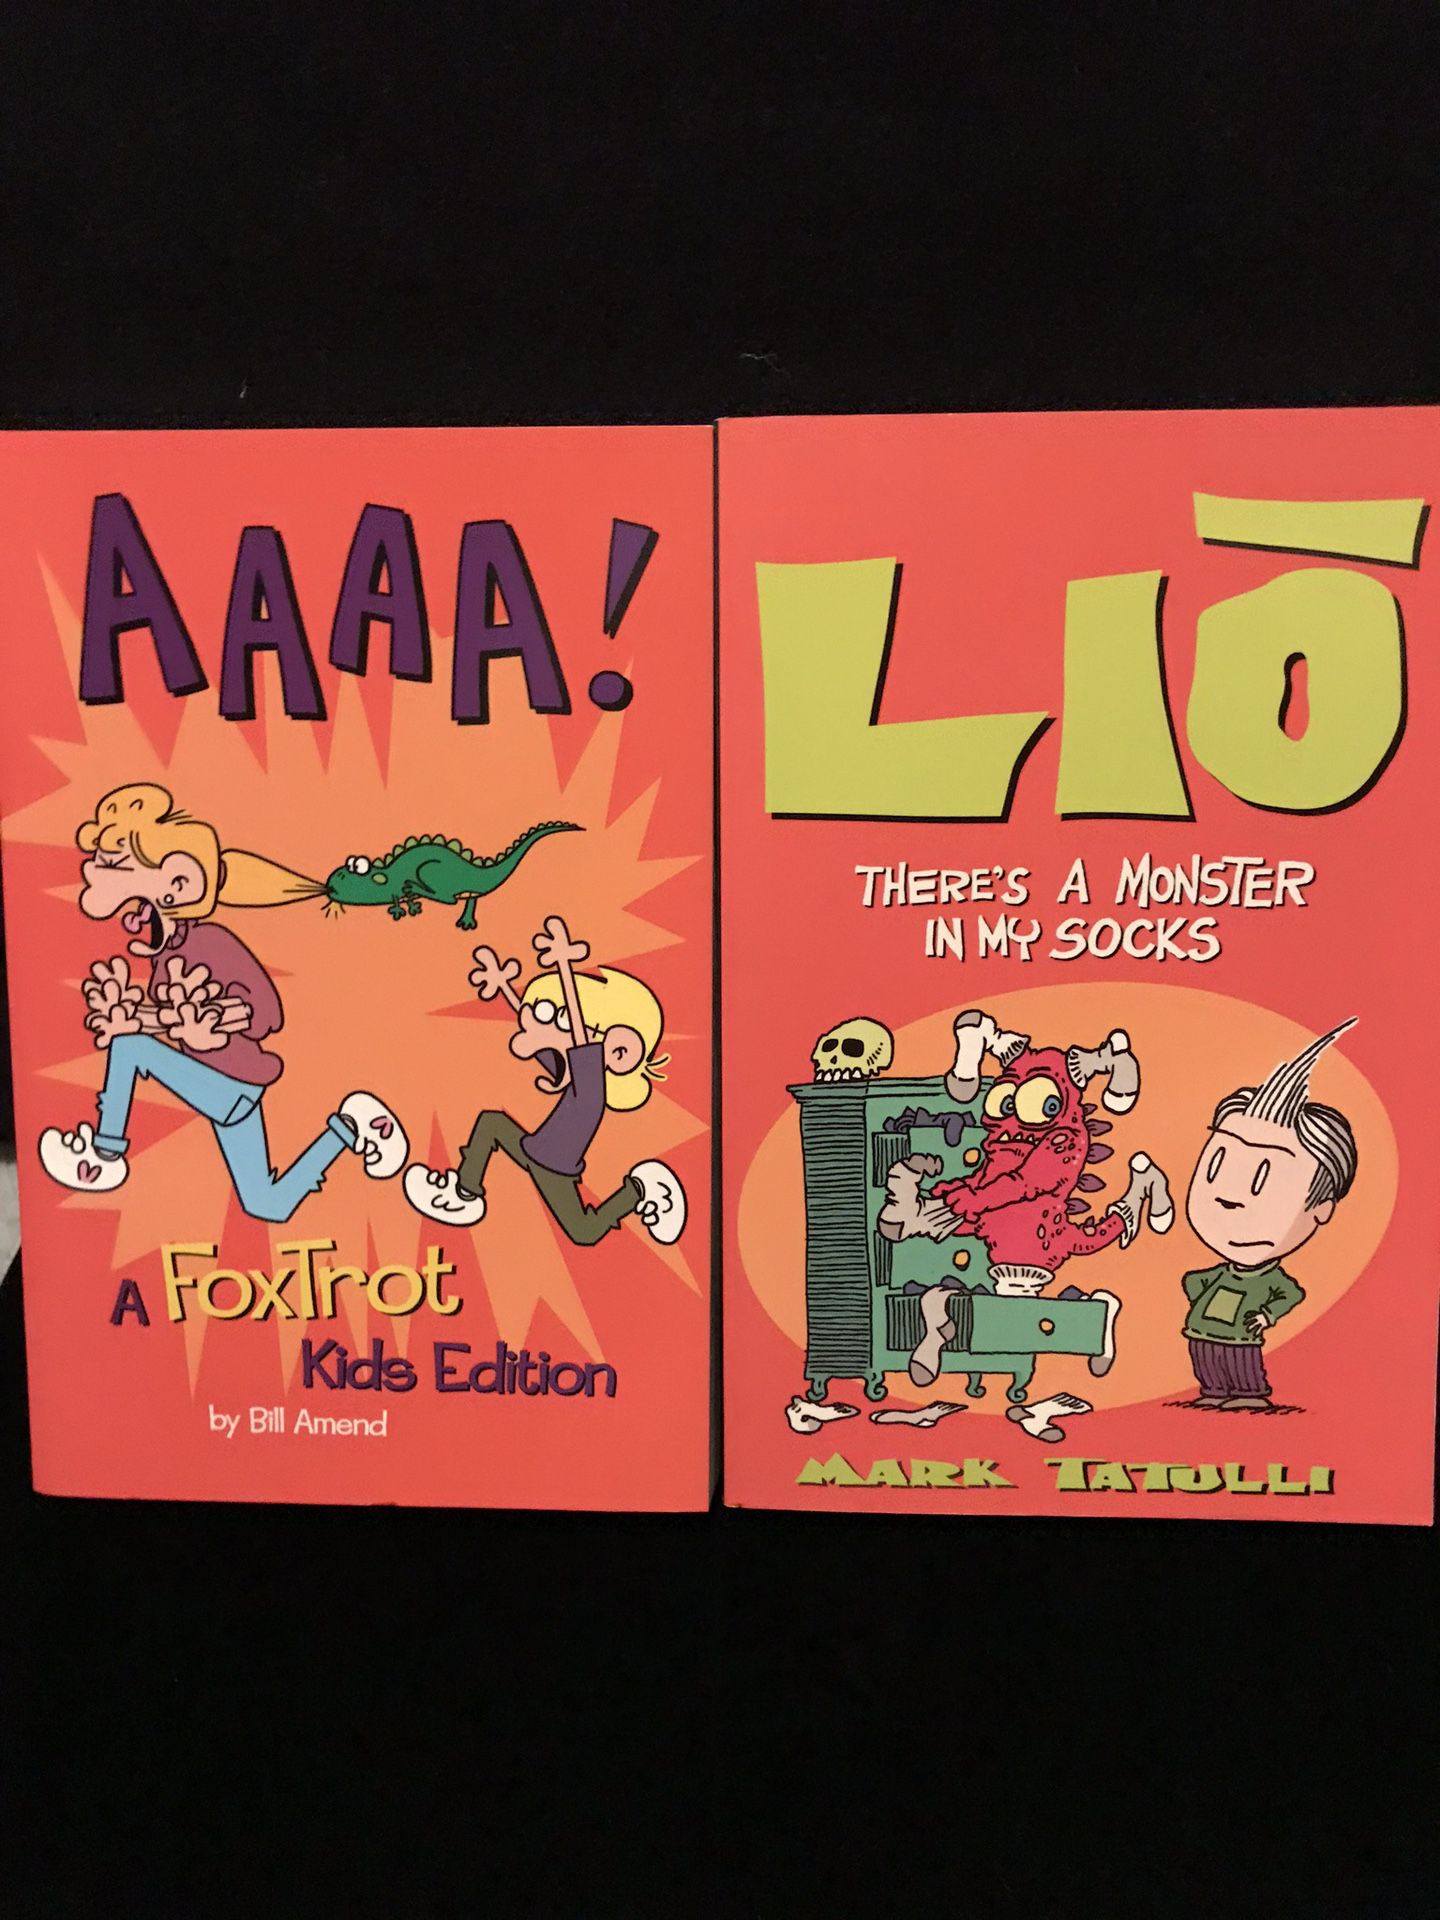 Liō, and AAAA! Books